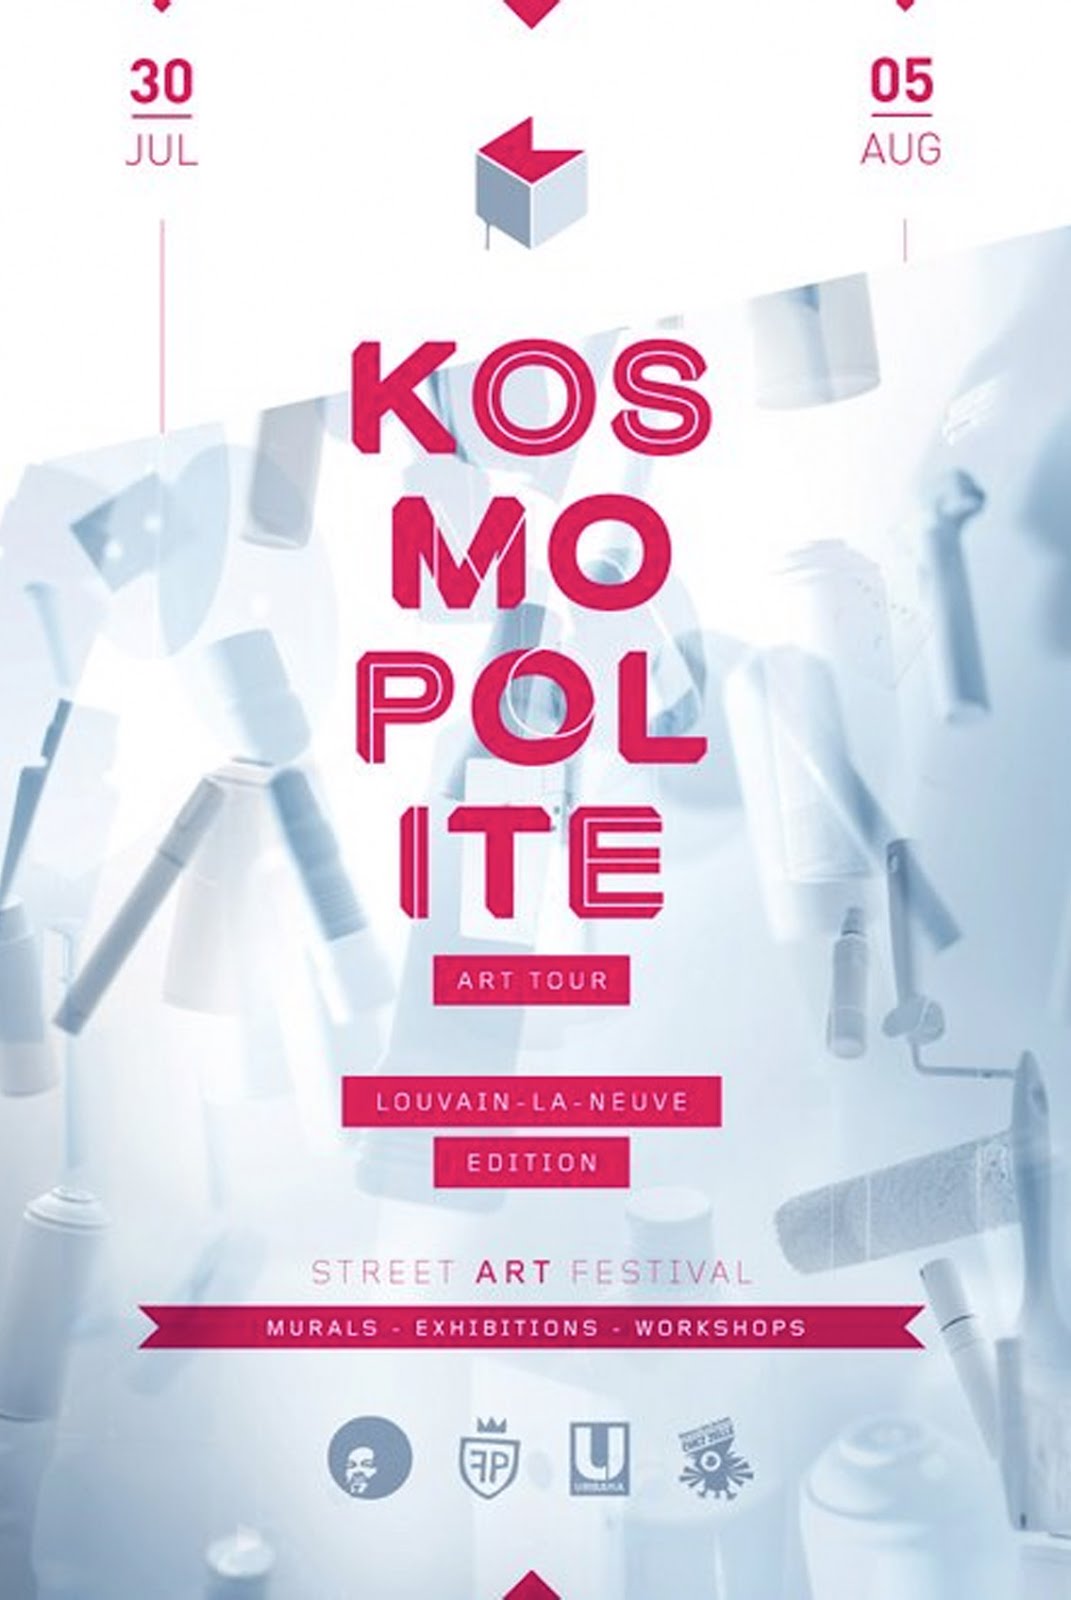 Kosmopolite art tour!